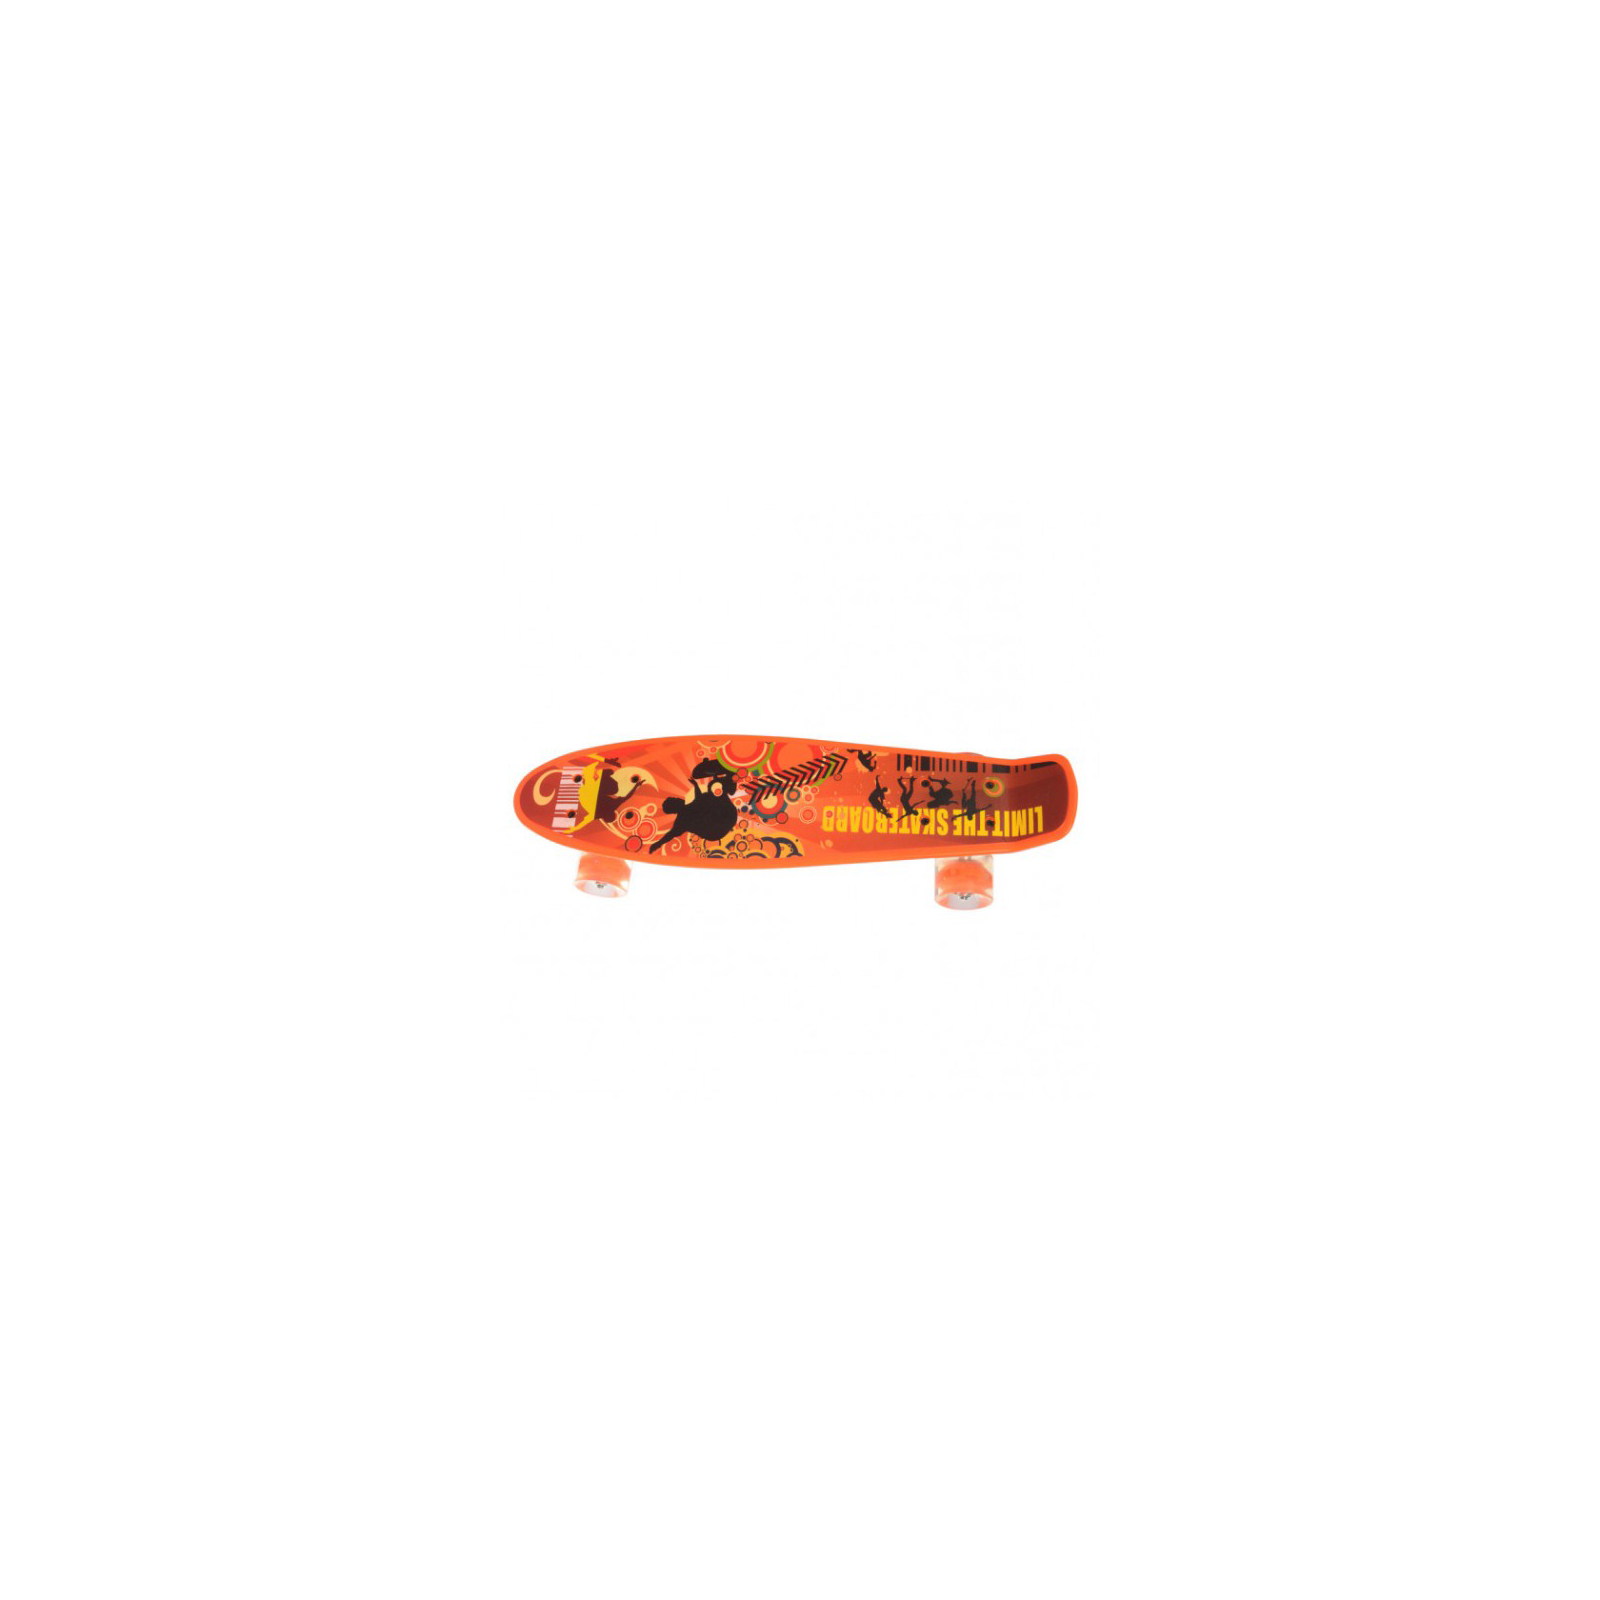 Скейтборд дитячий Profi MS 0749-1 orange зображення 2